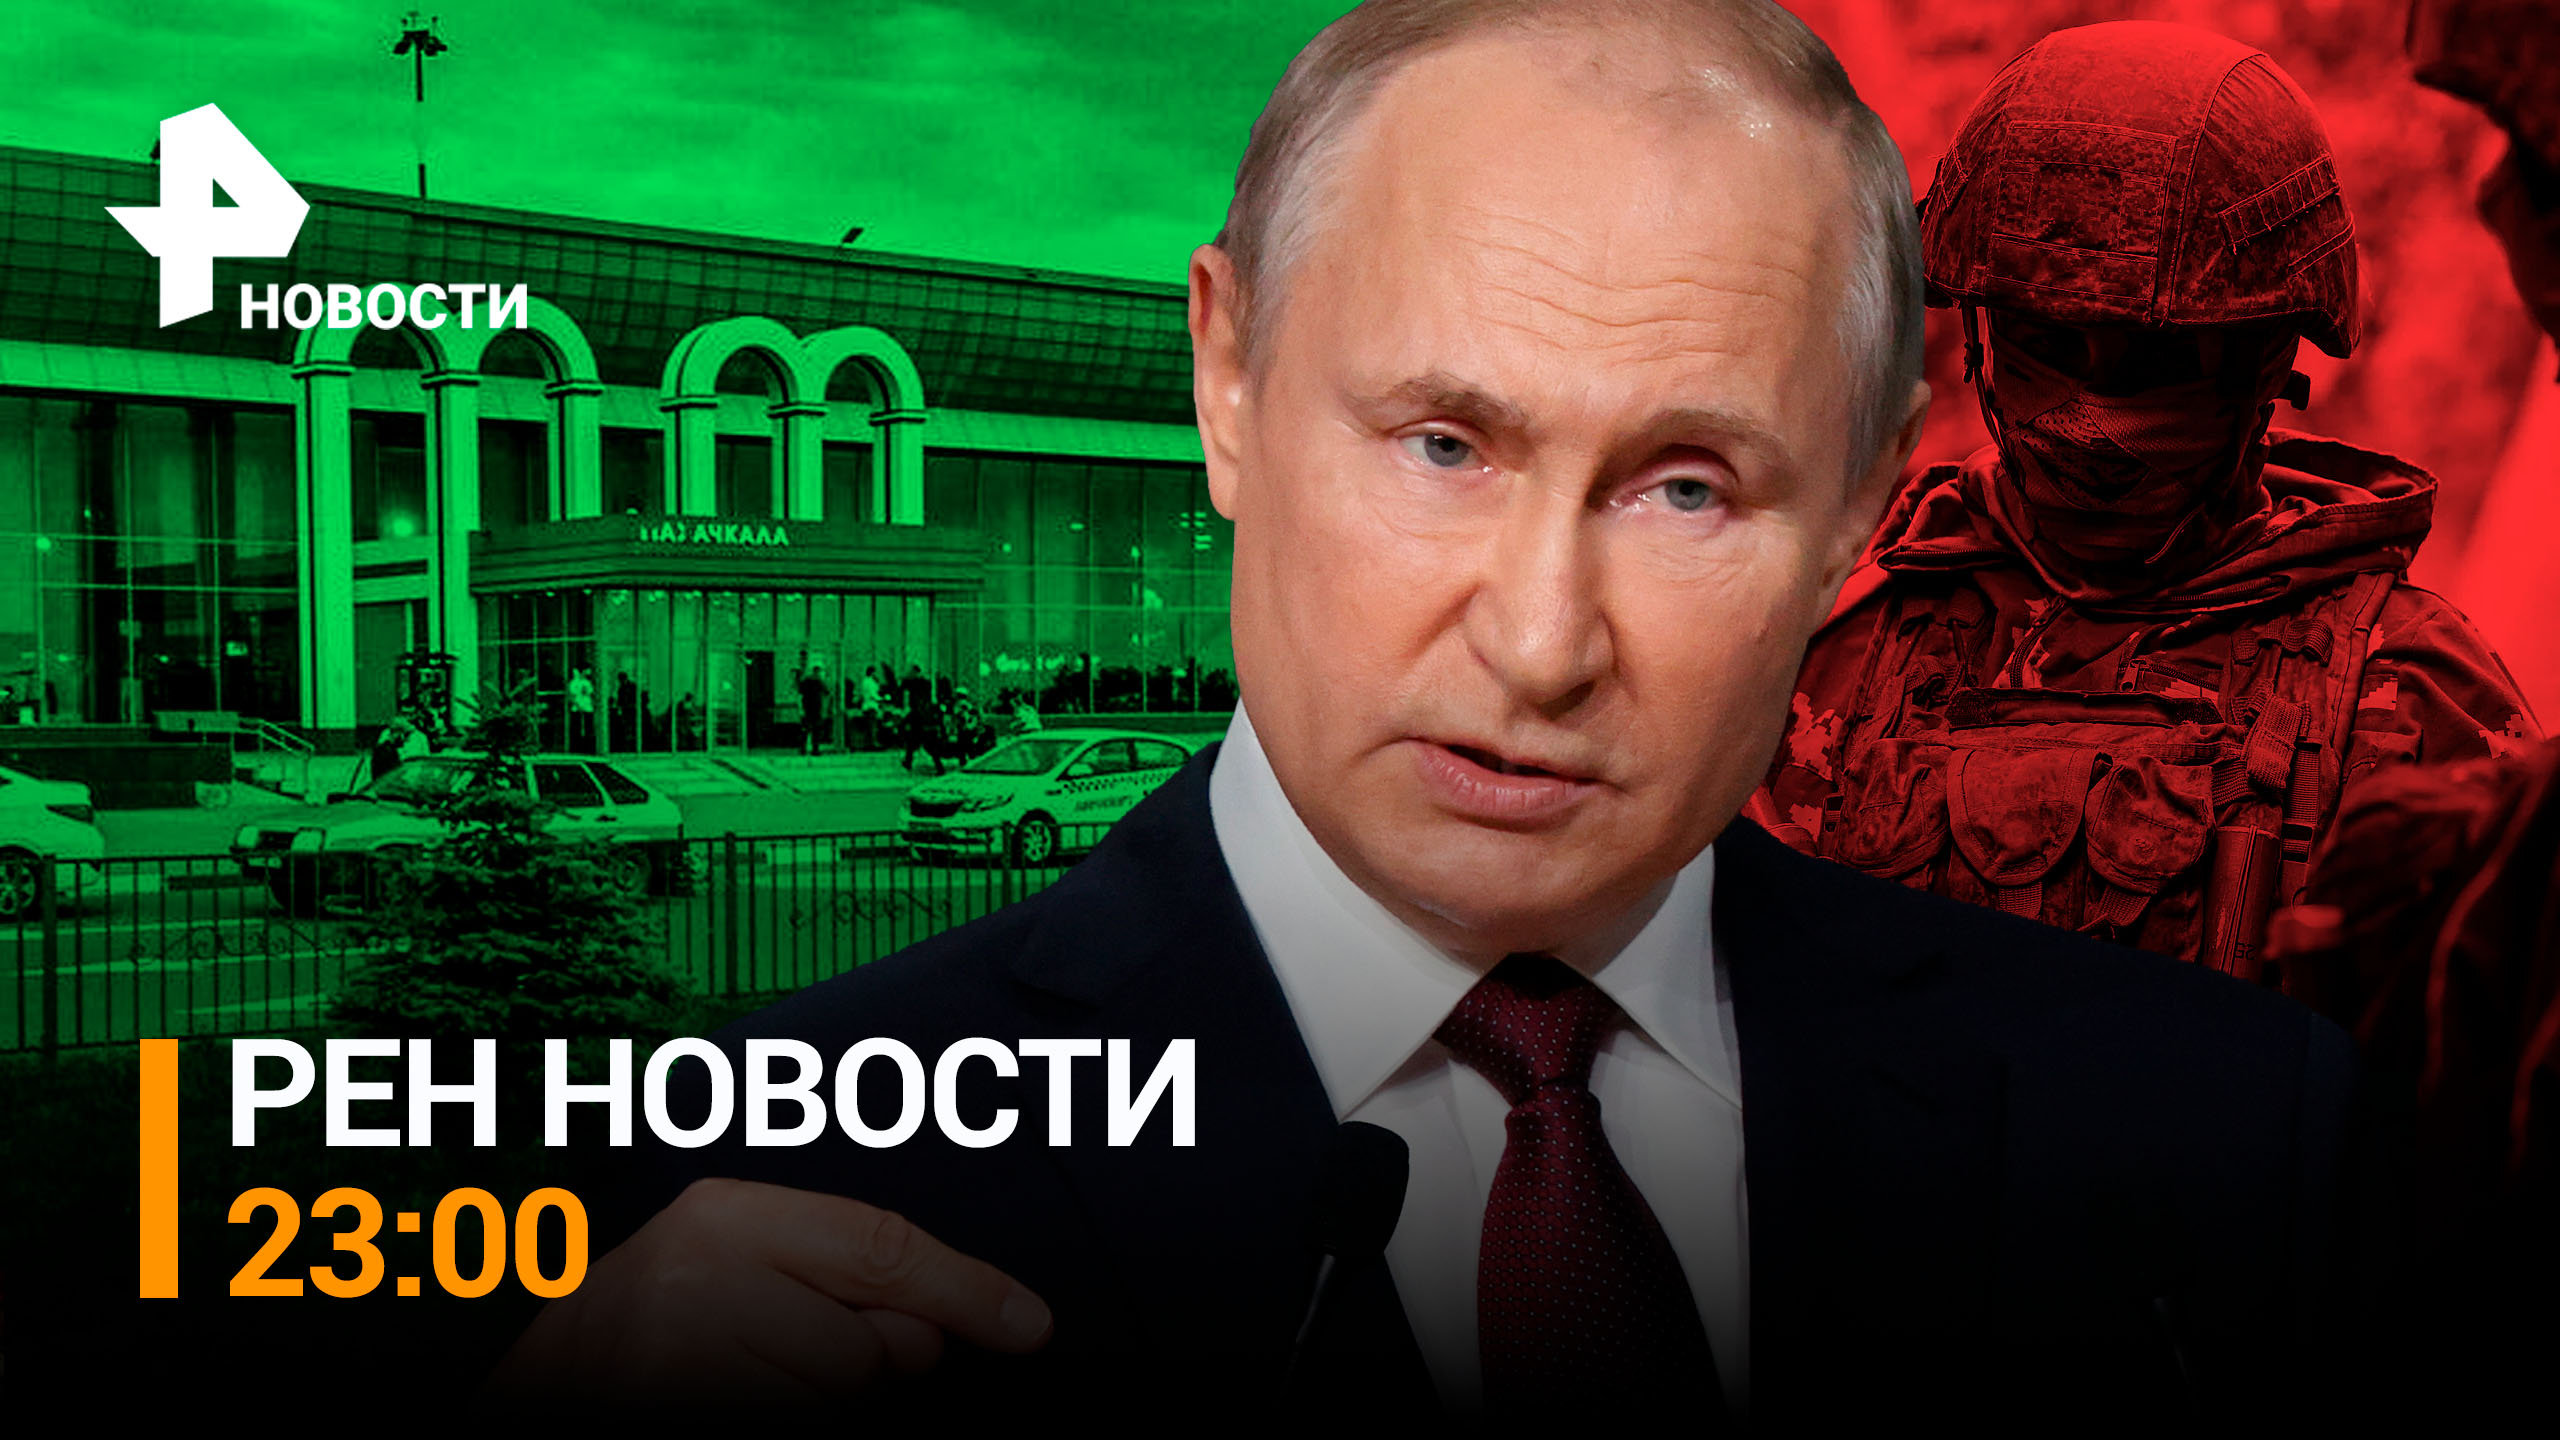 Владимир Путин заявил, кто стоит за организацией погромов в Дагестане / РЕН НОВОСТИ 23:00 от 30.10